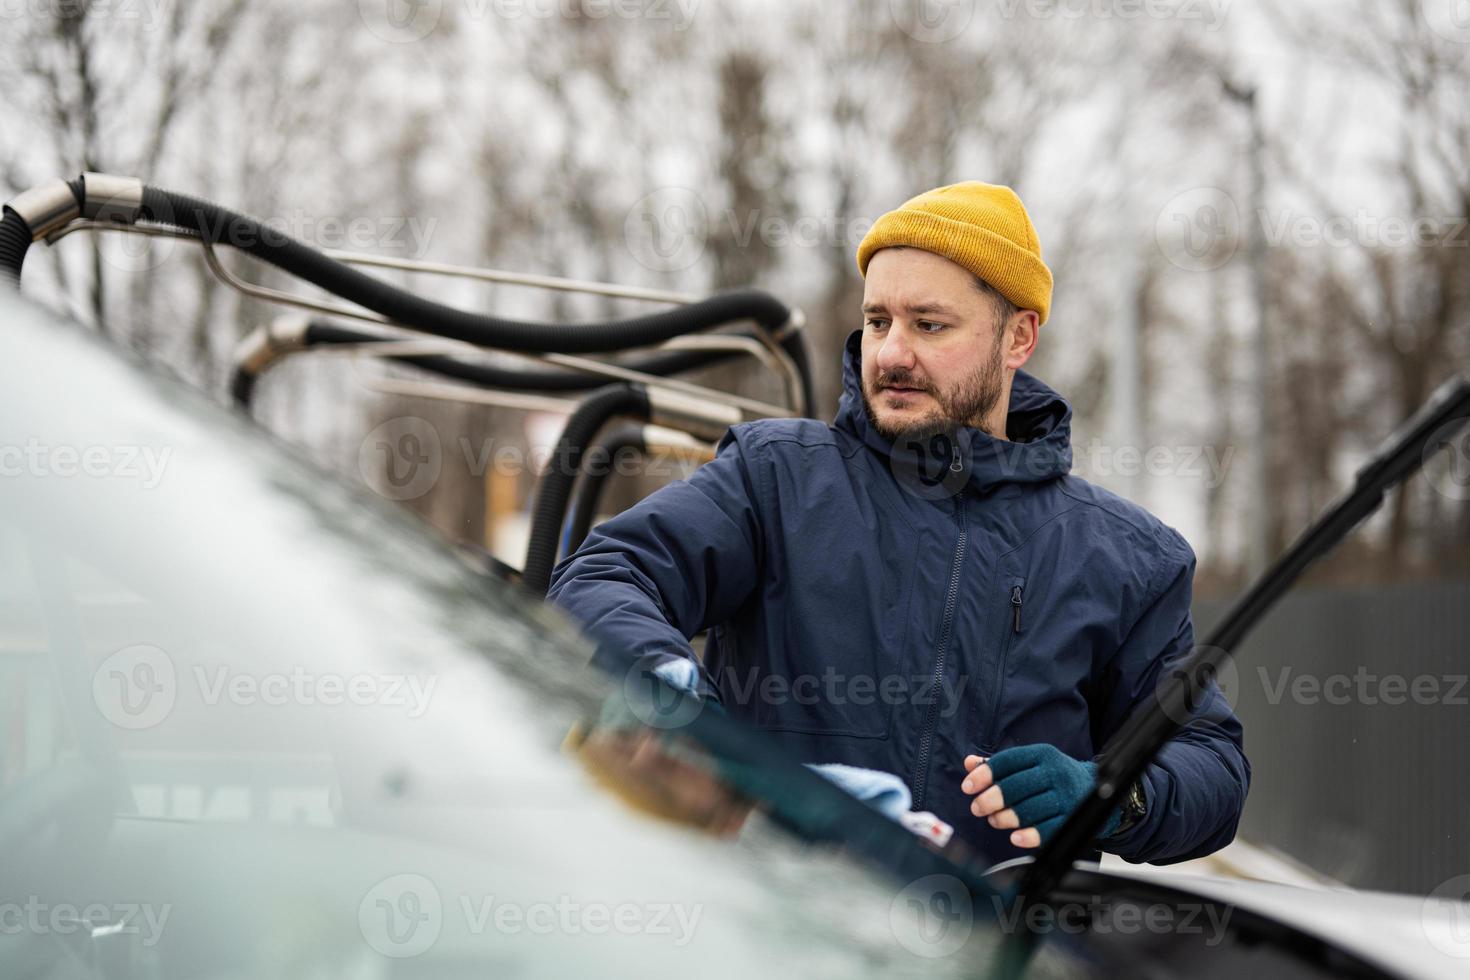 man våtservetter amerikan sUV bil vindskydd med en mikrofiber trasa efter tvättning i kall väder. foto